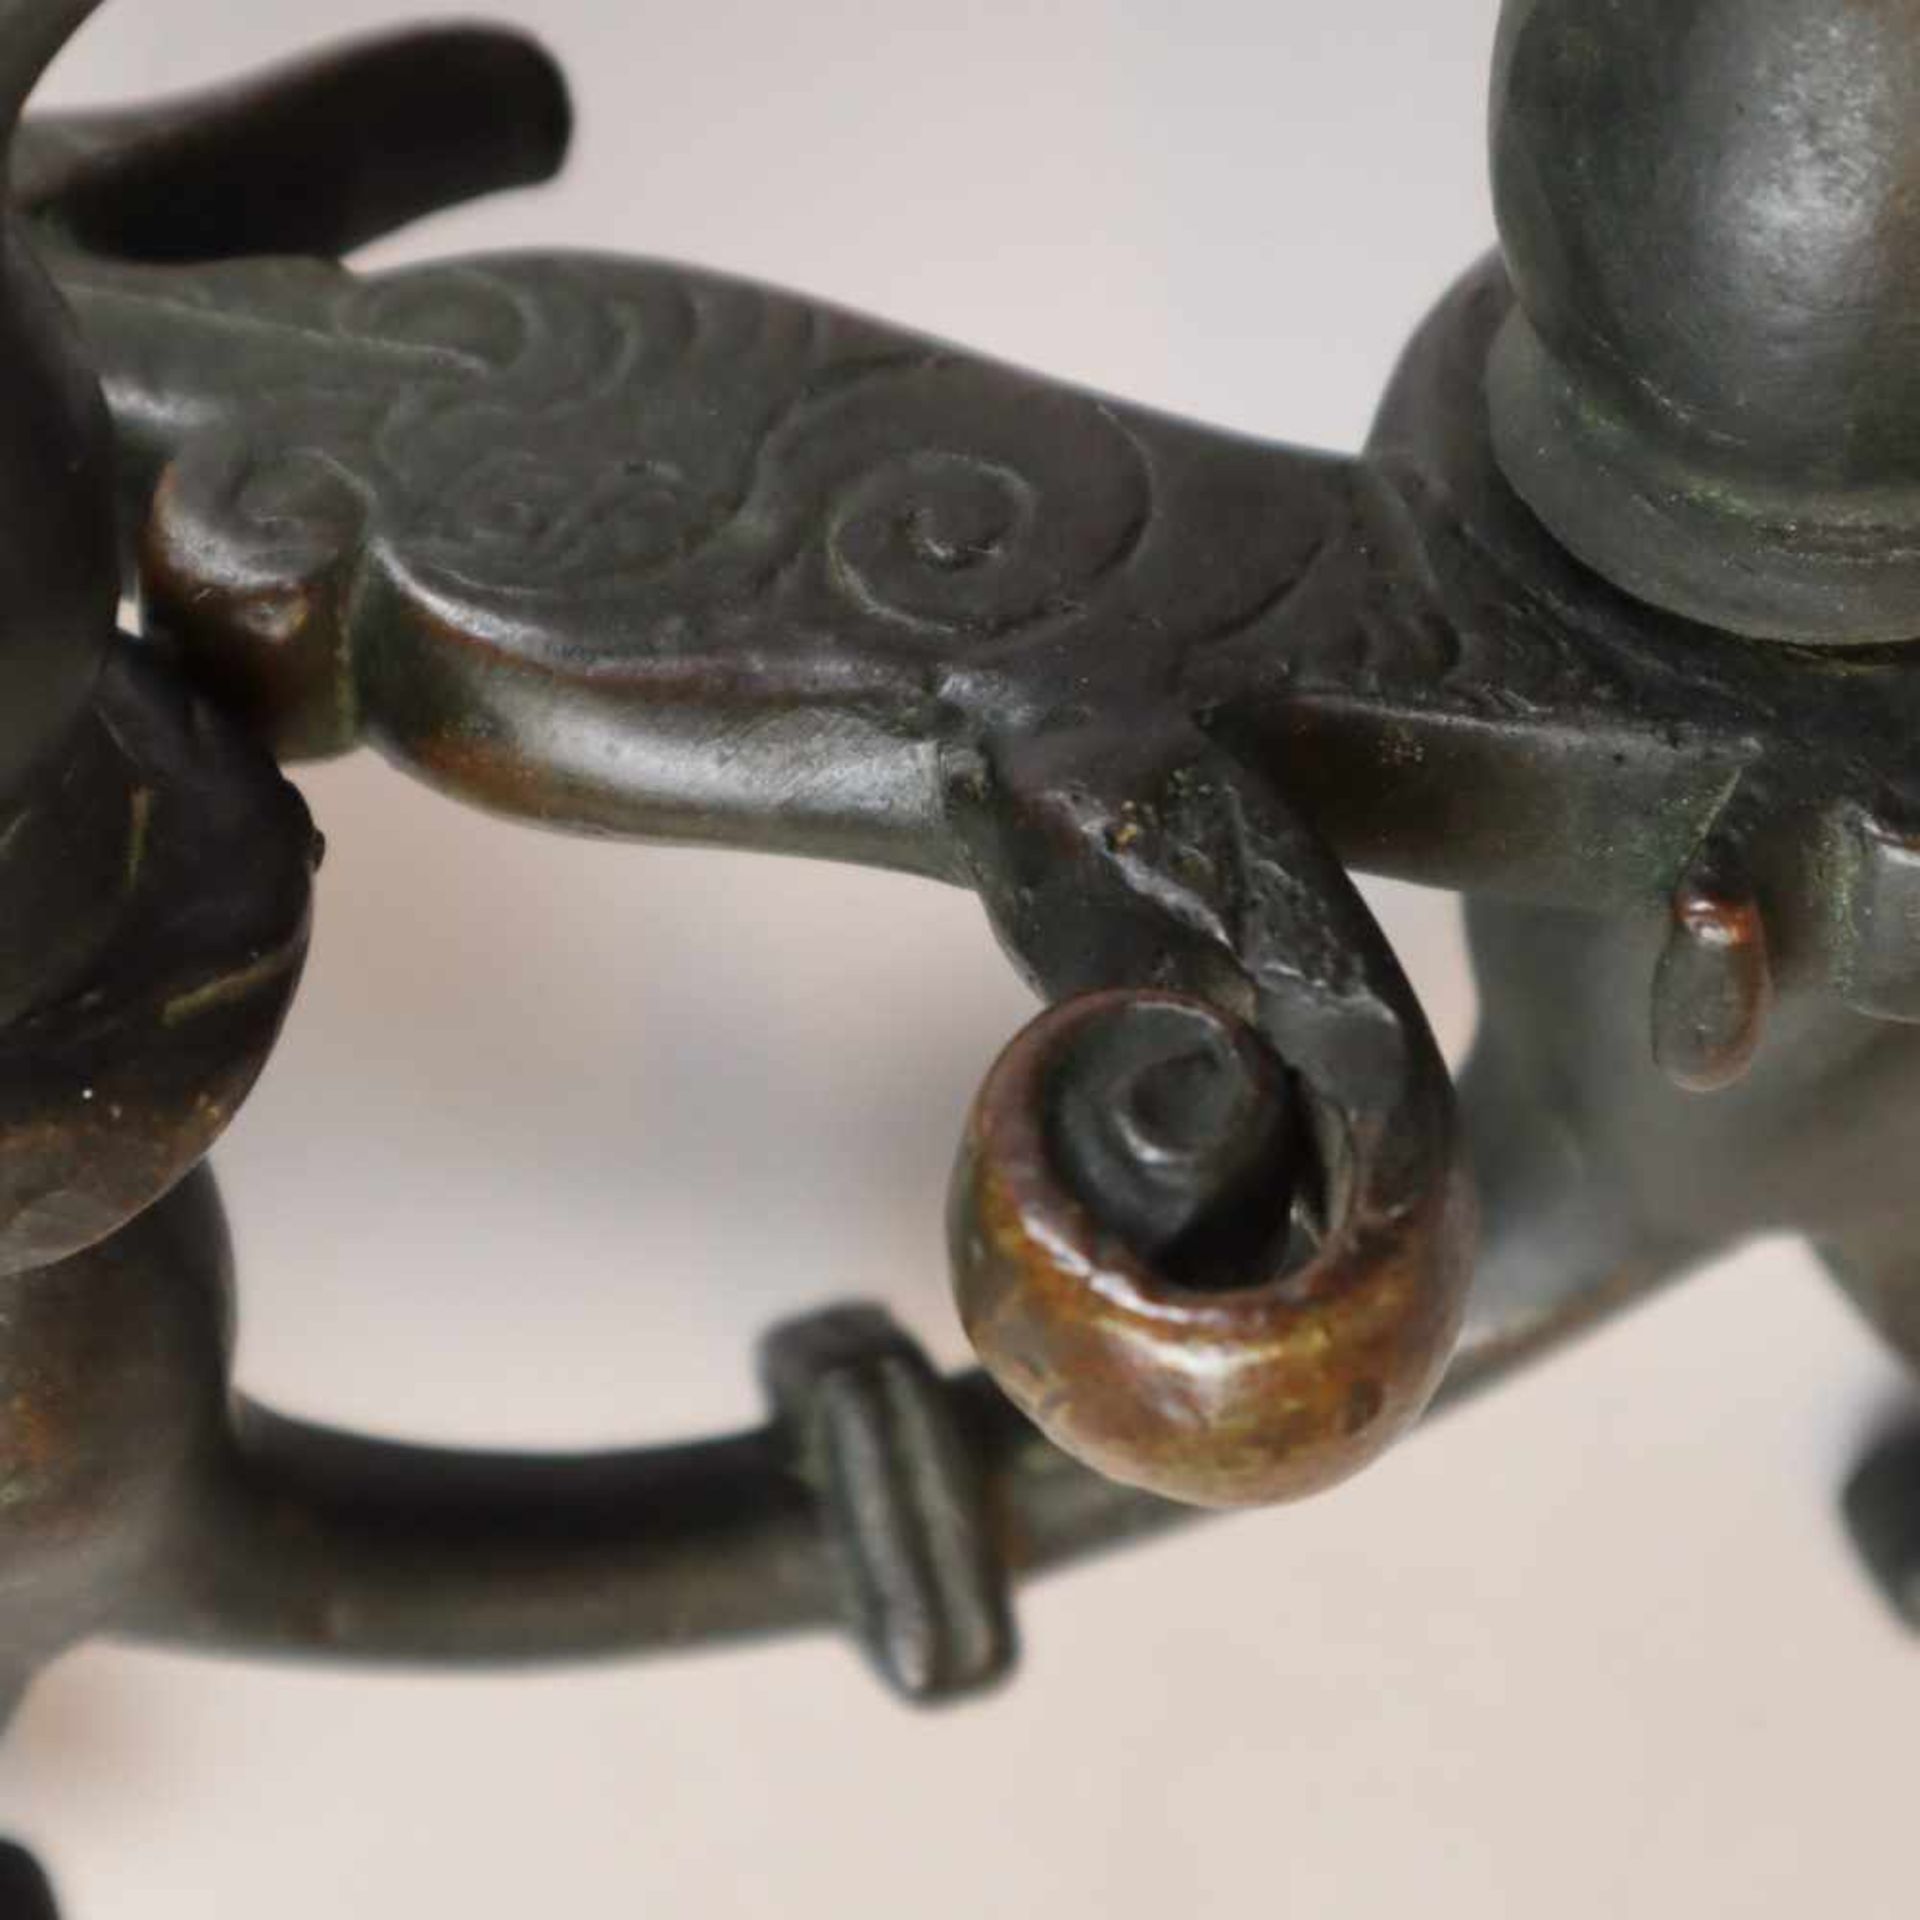 Türklopfer - Bronze, gegossen, dunkel patiniert, Dekor mit antropomorpher Figur und Voluten, - Bild 6 aus 6